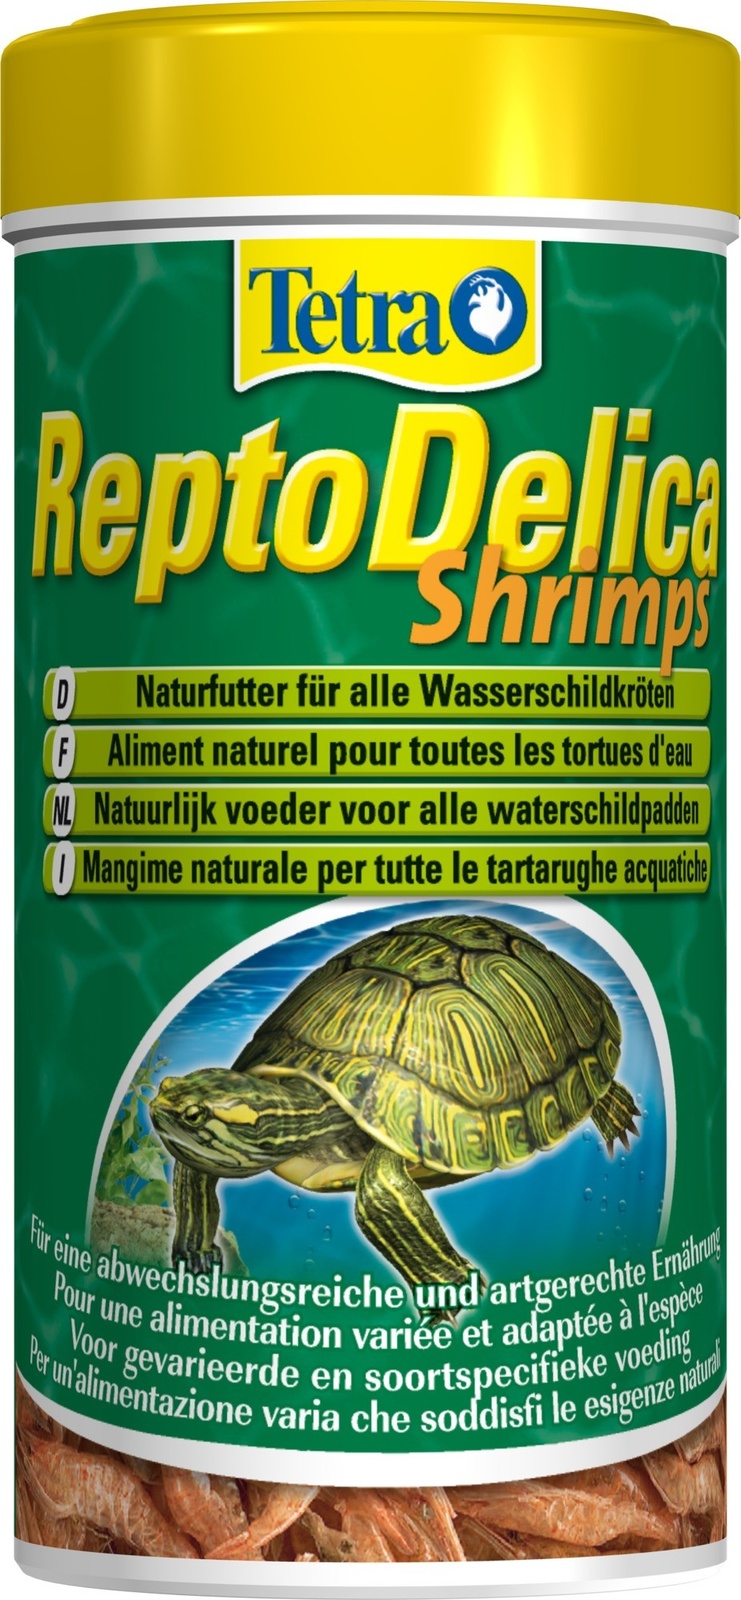 Tetra (корма) Tetra (корма) корм для водных черепах. креветки ReptoDelica Shrimps (20 г) корм для рептилий tetra reptodelica shrimps 50 г